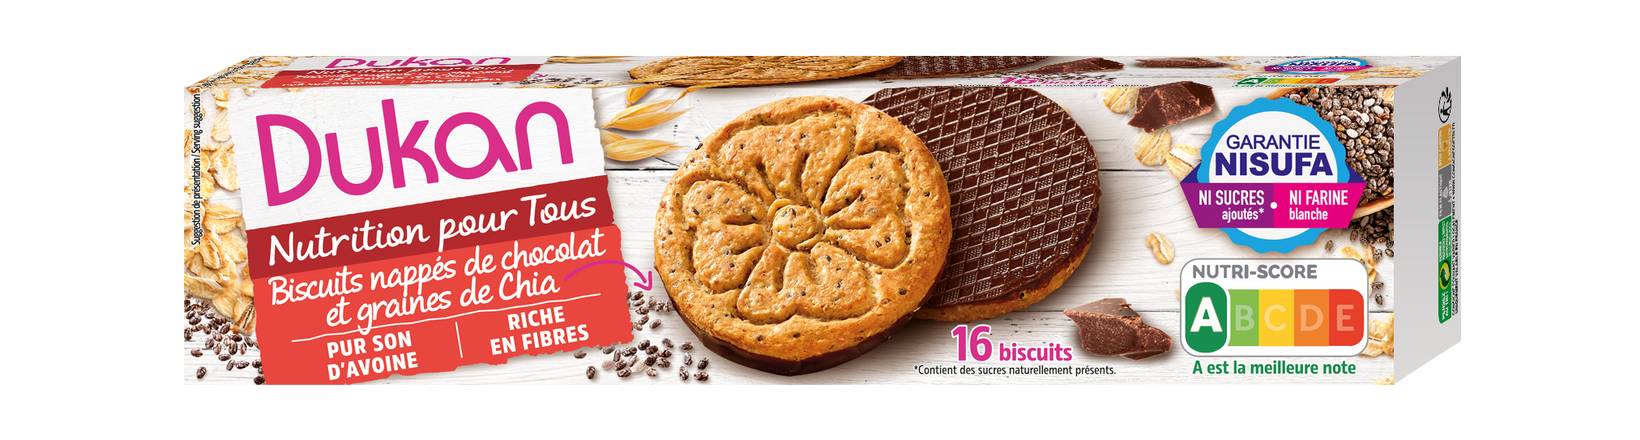 Dukan - Biscuits nappés de chocolat et graines de chia (16 pièces), Delivery Near You